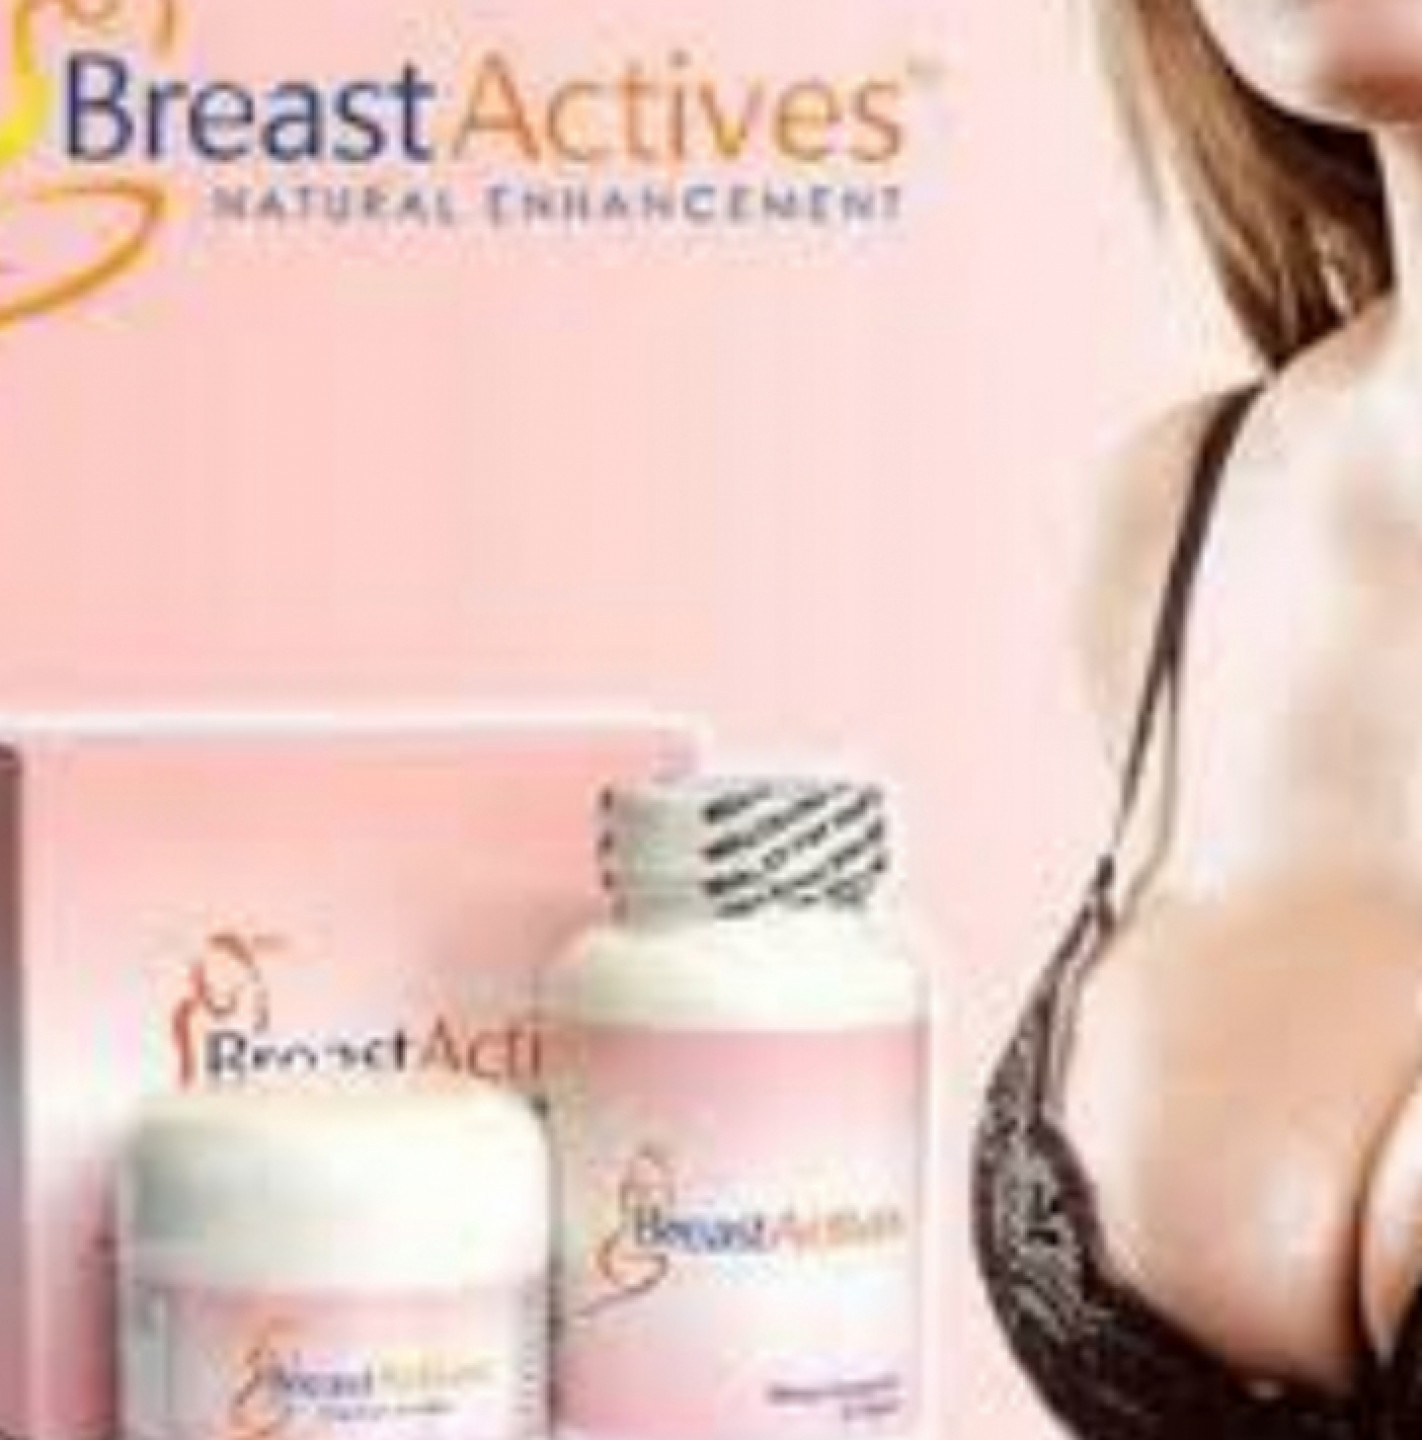 buy ===>>>> https://wheretobuyy.com/breast-actives/